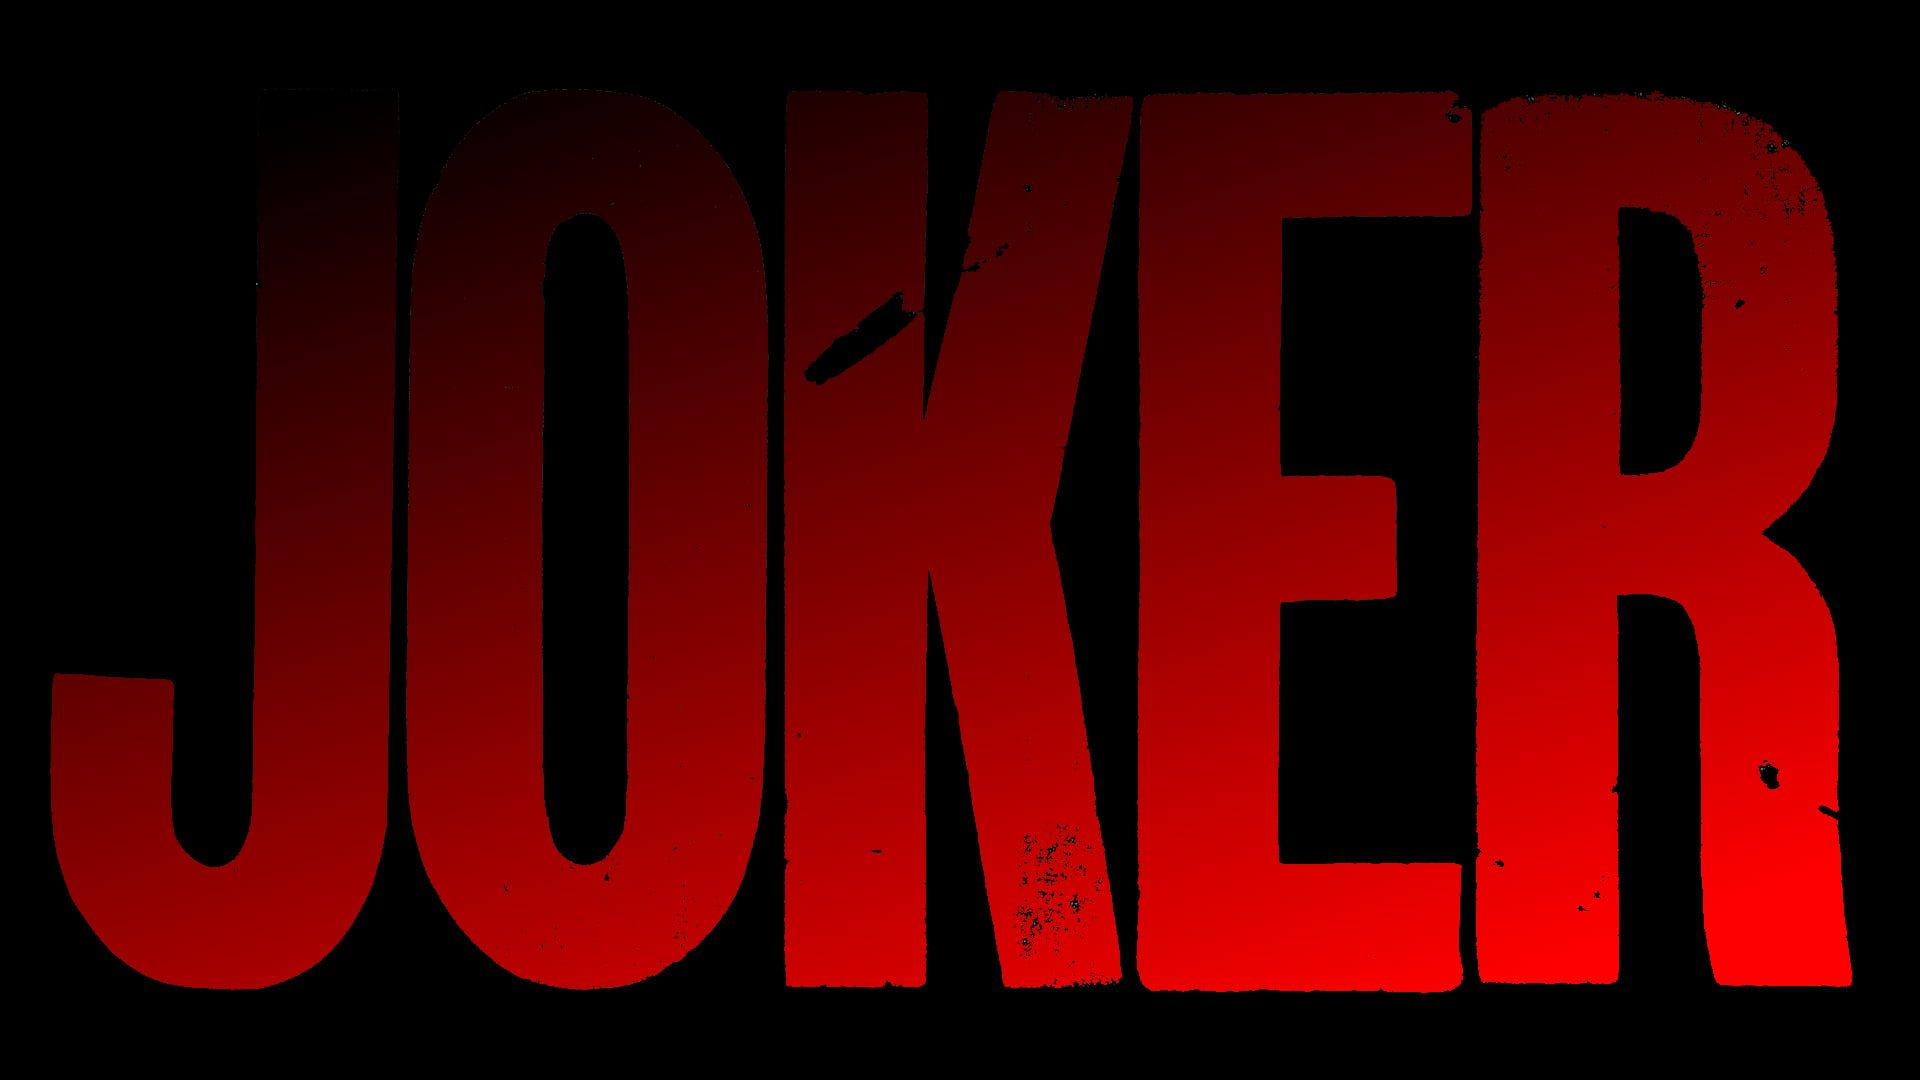 Joker Joaquin Phoenix #dark #red #simple #text 9 (movie) #dceu #Batman P #wallpaper #hdwallpaper #desktop. Joker HD wallpaper, Joker wallpaper, Joker